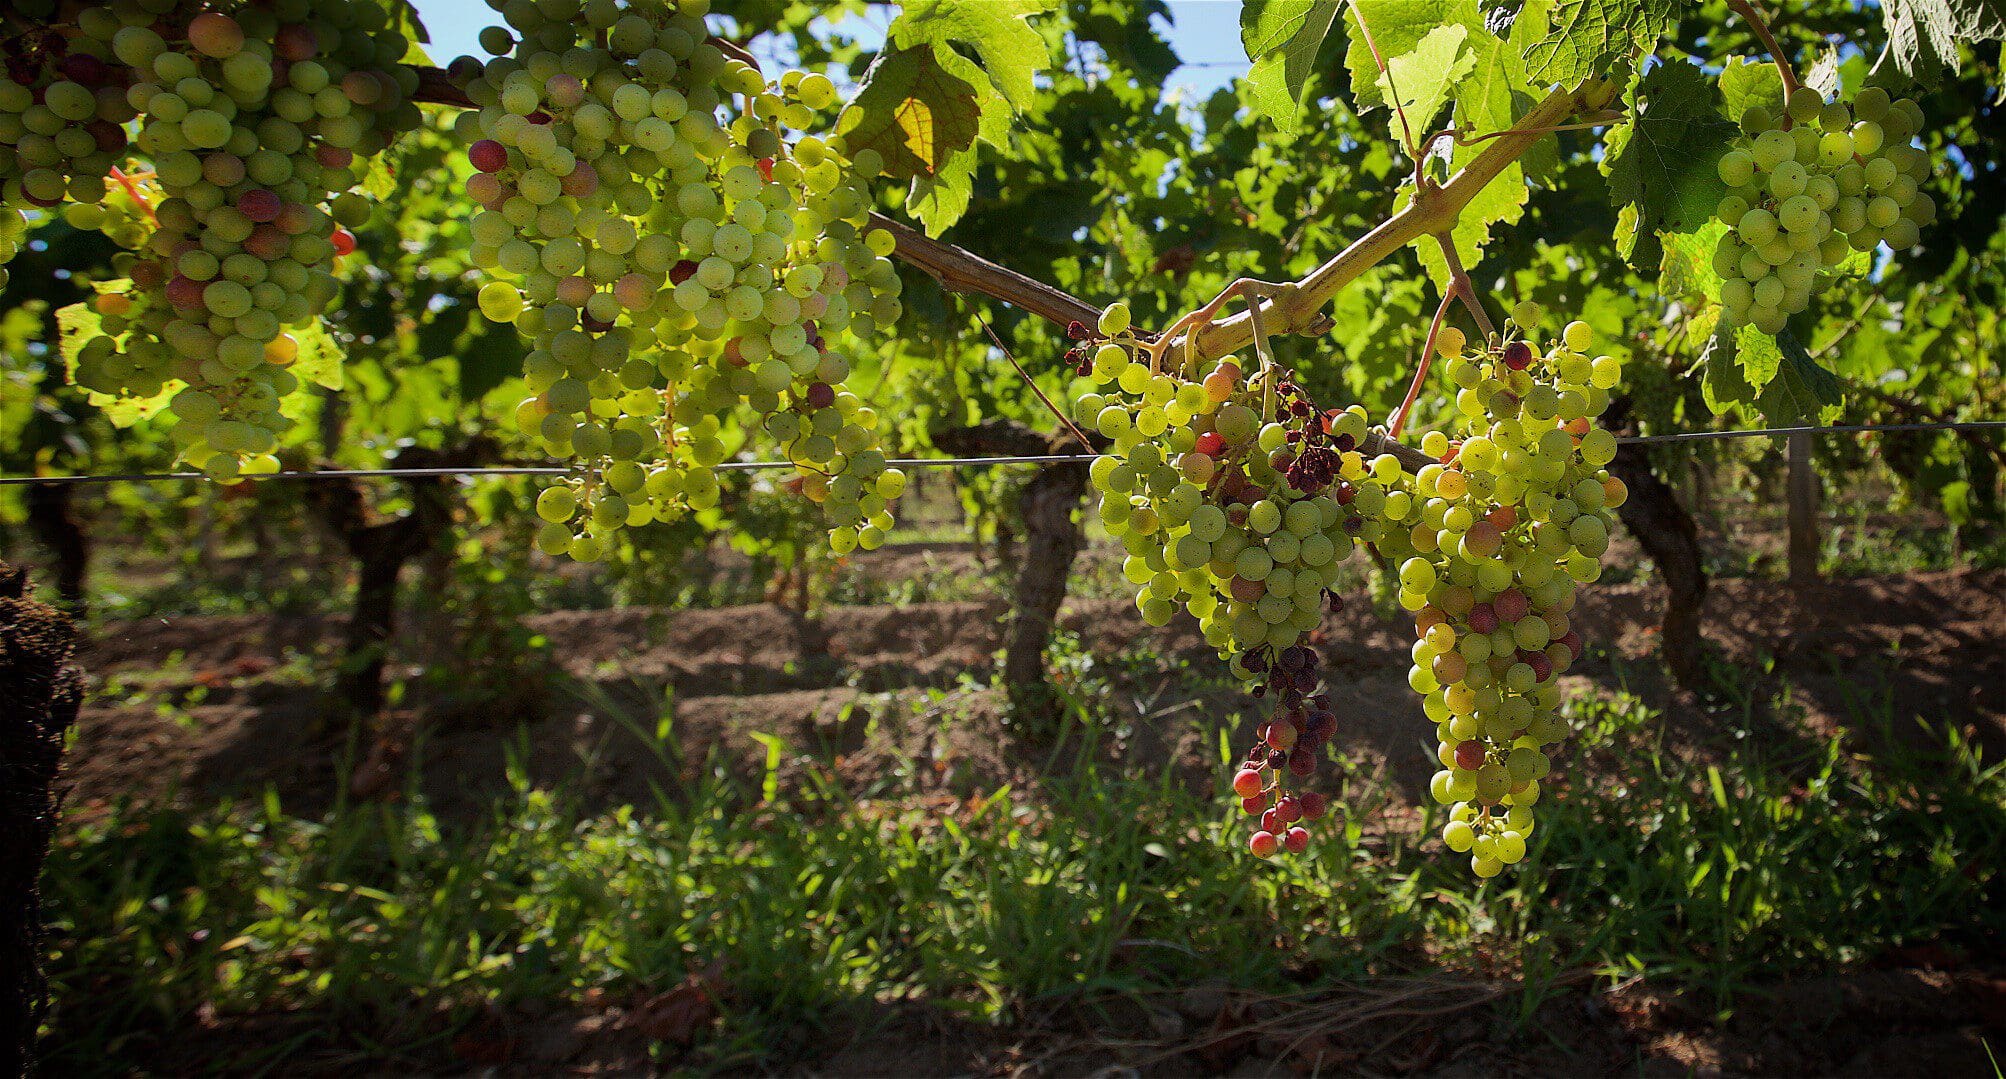 « Il va falloir se remettre en question » estime Paul, viticulteur à Saint-Emilion pour 1000 euros par mois